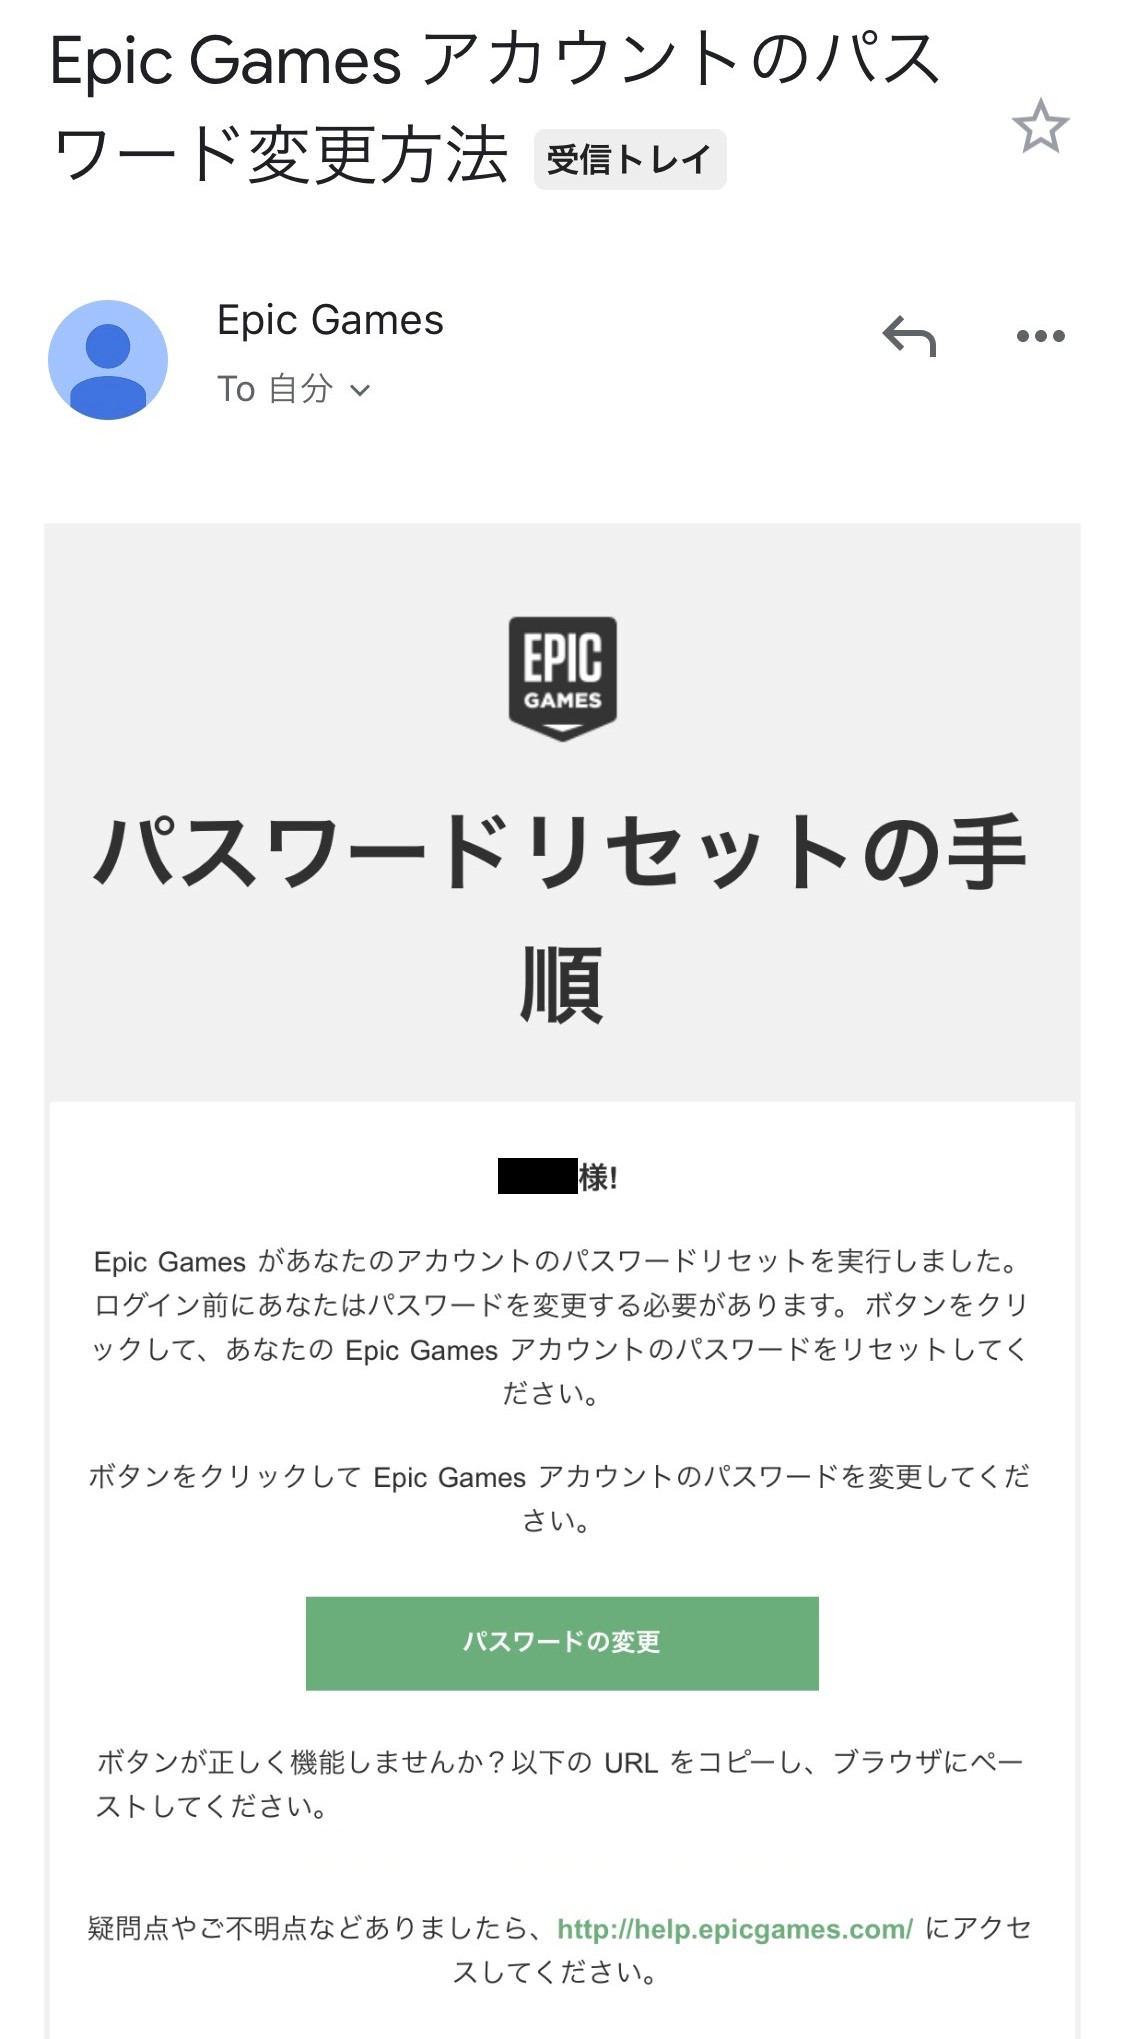 フォートナイト Epicgames Comから 認証メール が届かないときの対処法 アカウントのメールアドレス変更手順を徹底解説